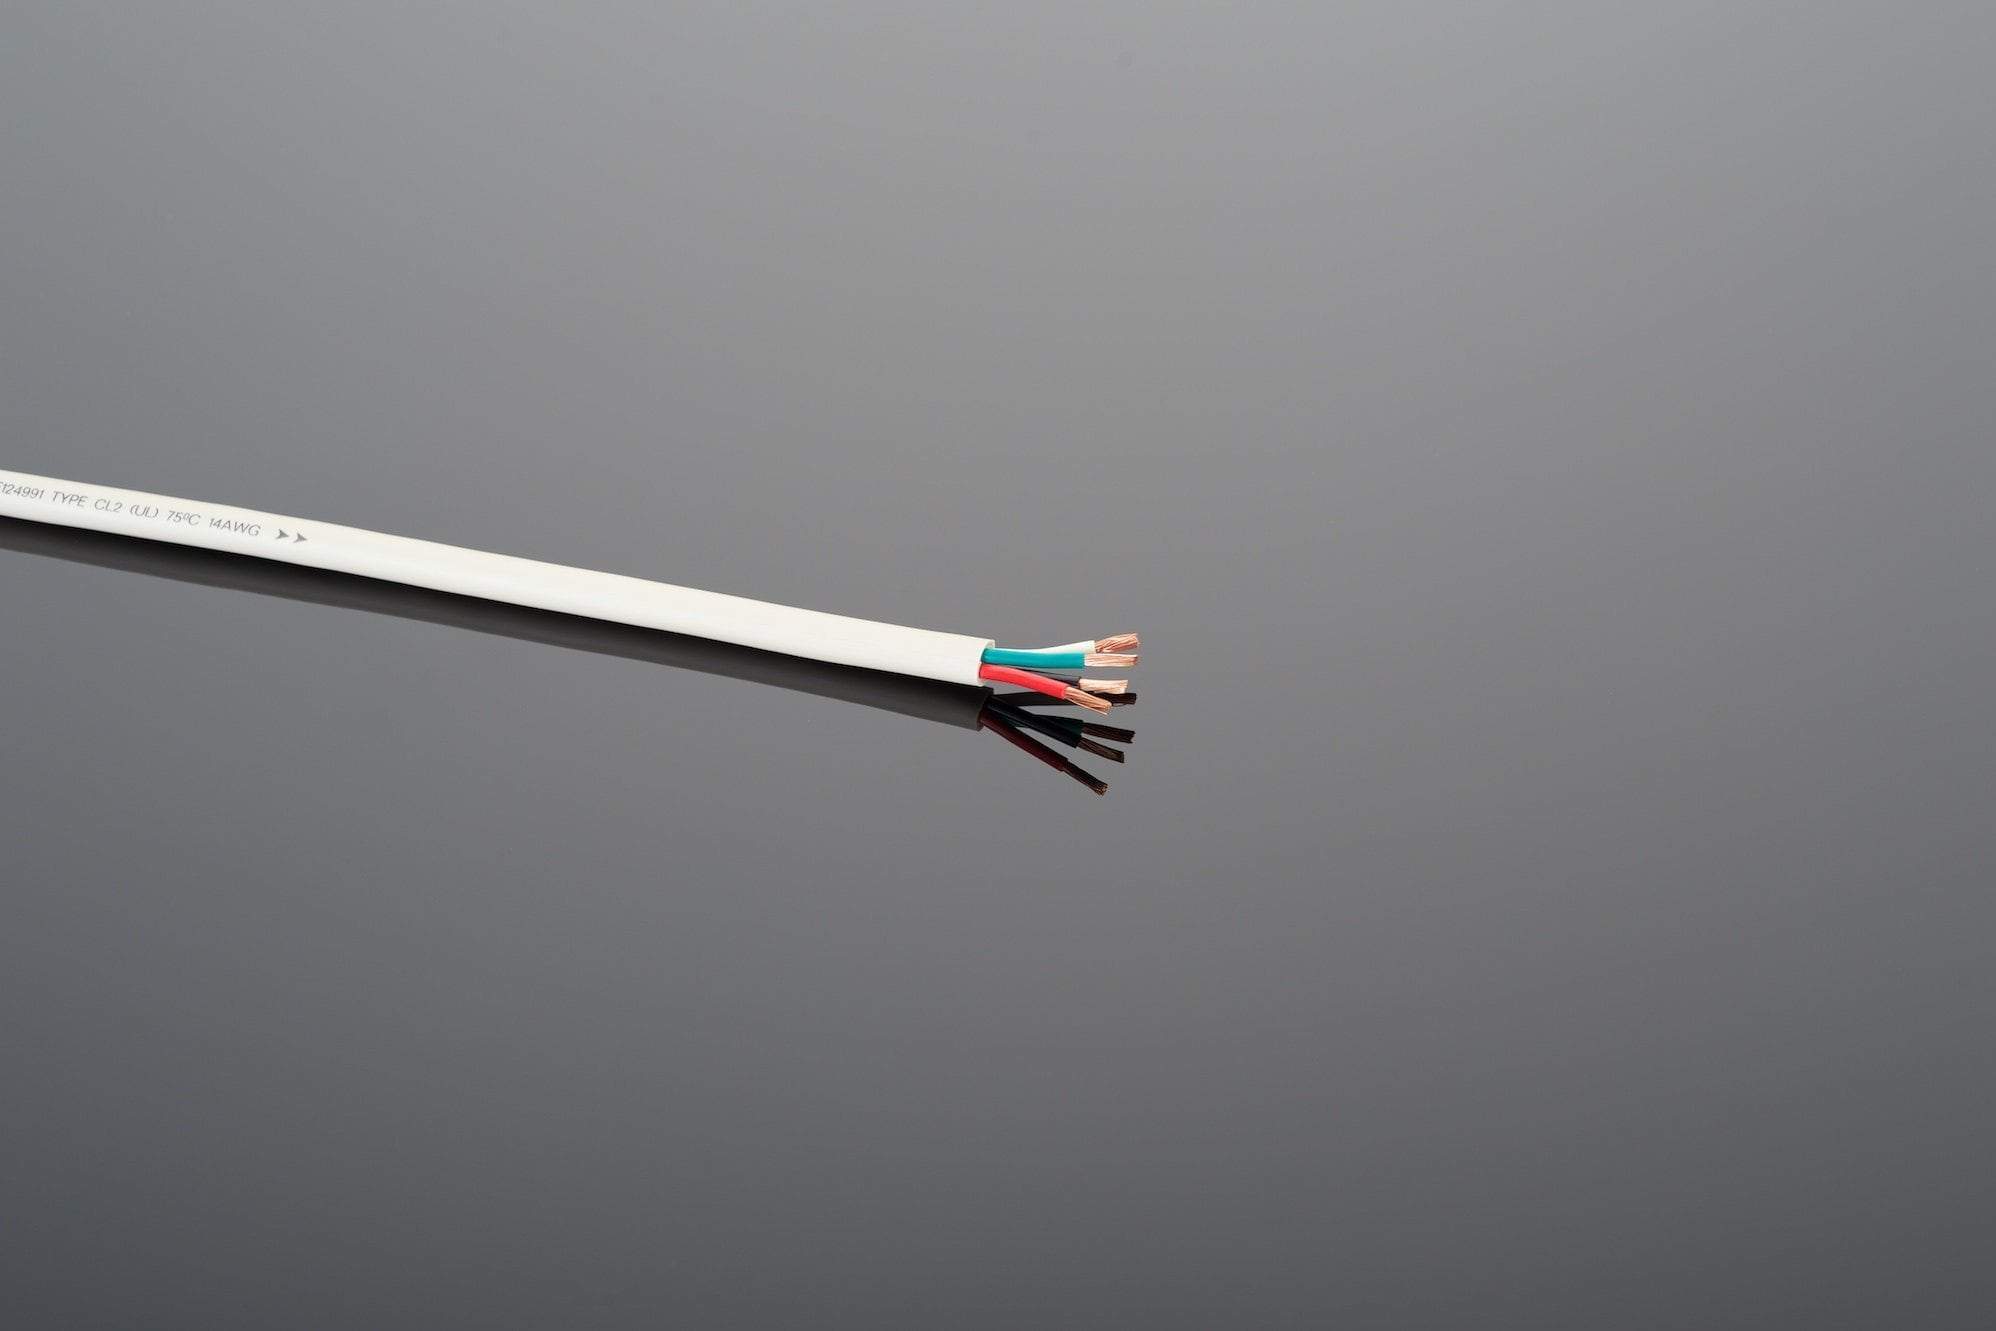 Cable de Altavoz Transparente CU - 50 m, Diámetro 2 x 1,5 mm² Audio